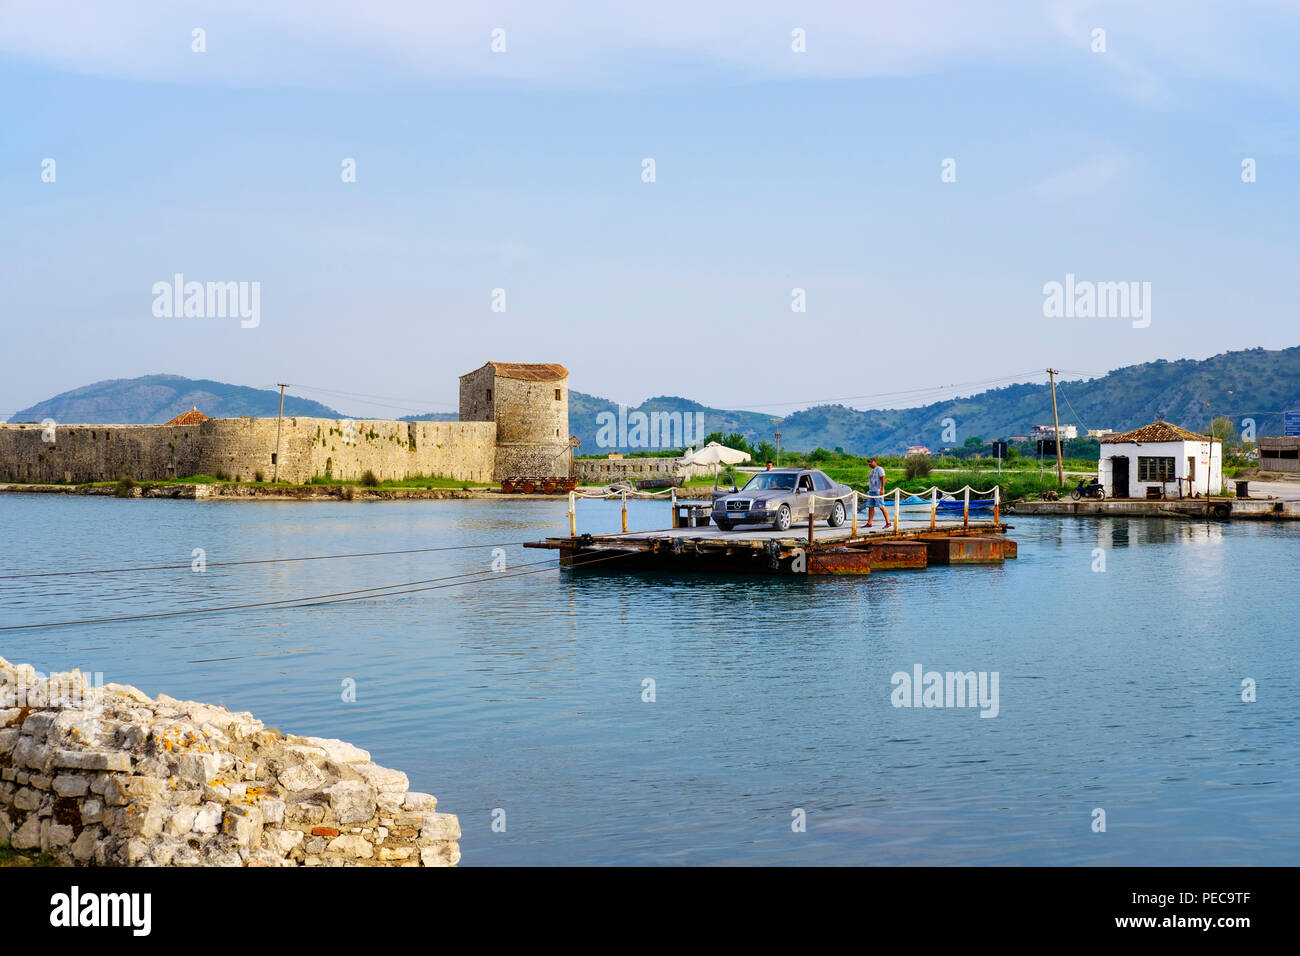 Car-ferry via Vivar Canal, forteresse vénitienne à l'arrière, le Parc National de Butrint, près de Saranda, Albanie, Qark Vlora Banque D'Images